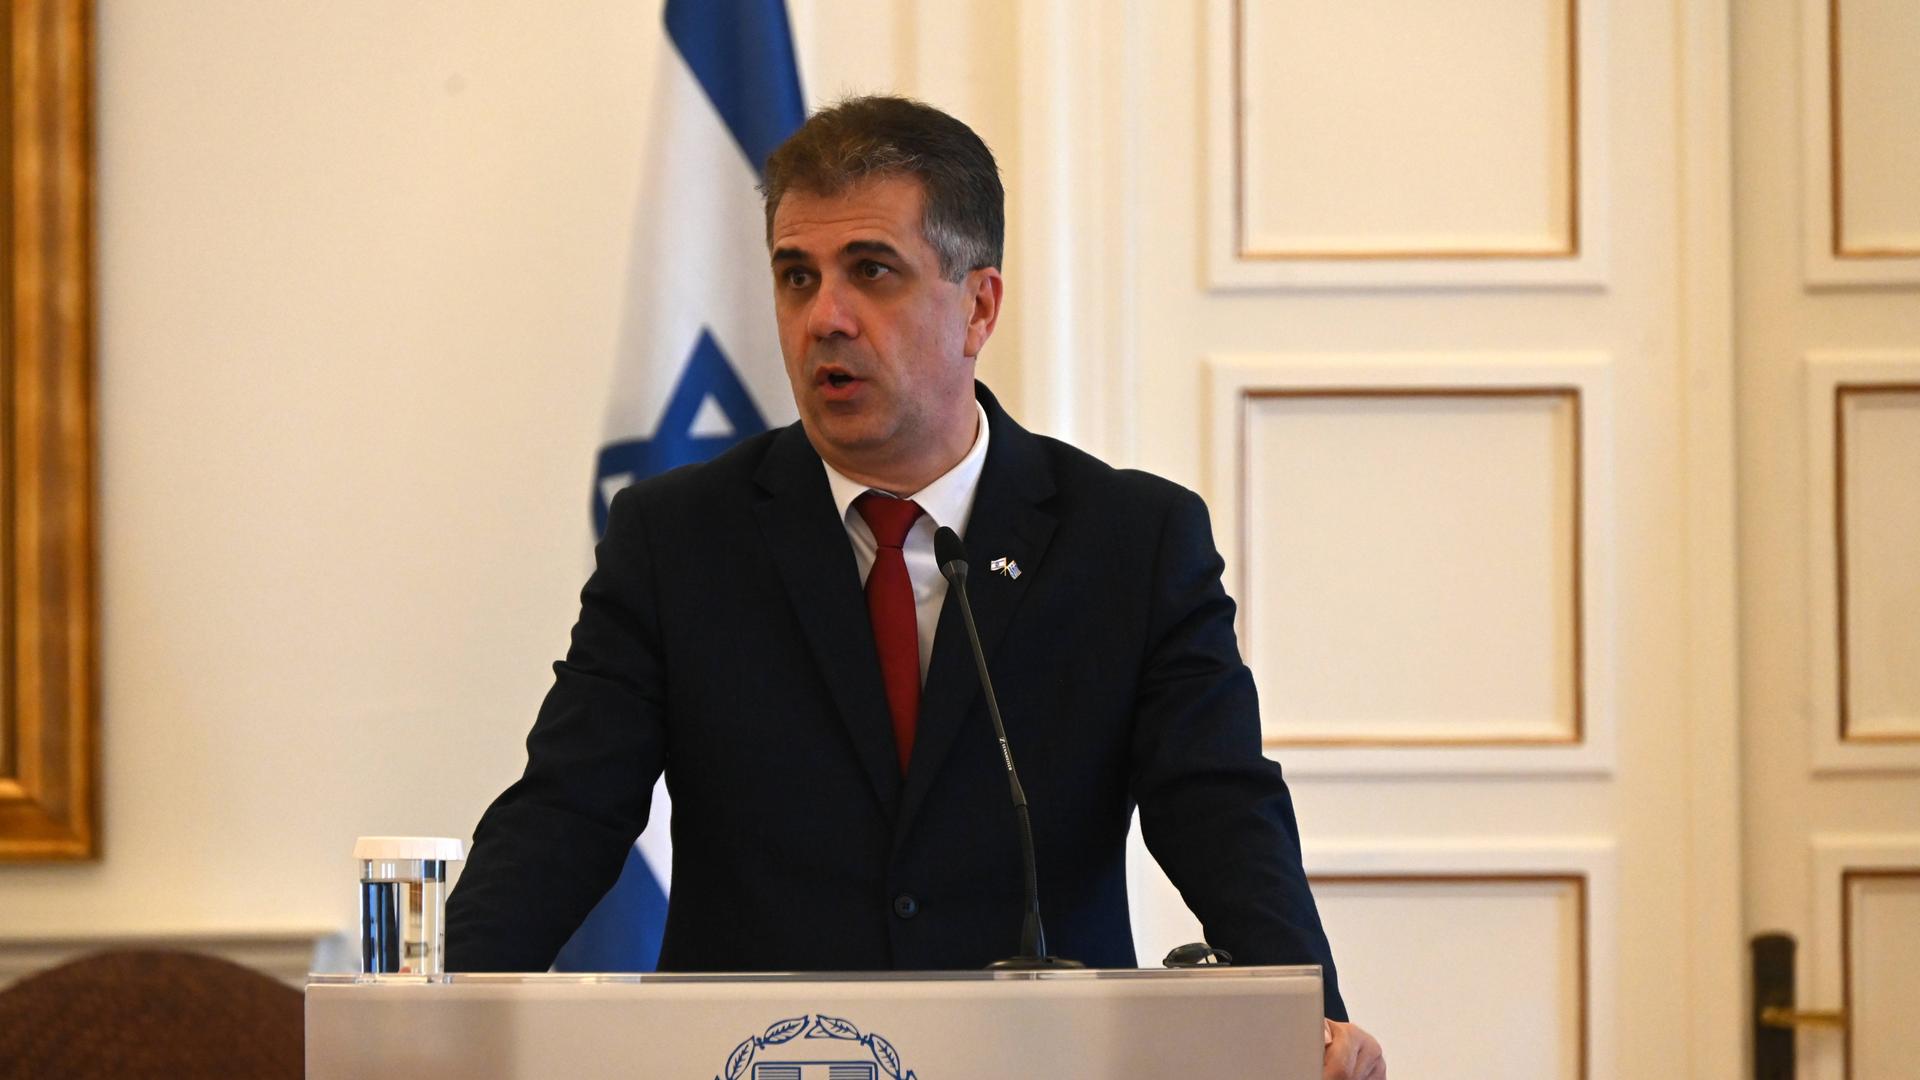 Der israelische Außenminister Cohen spricht an einem Rednerpult.